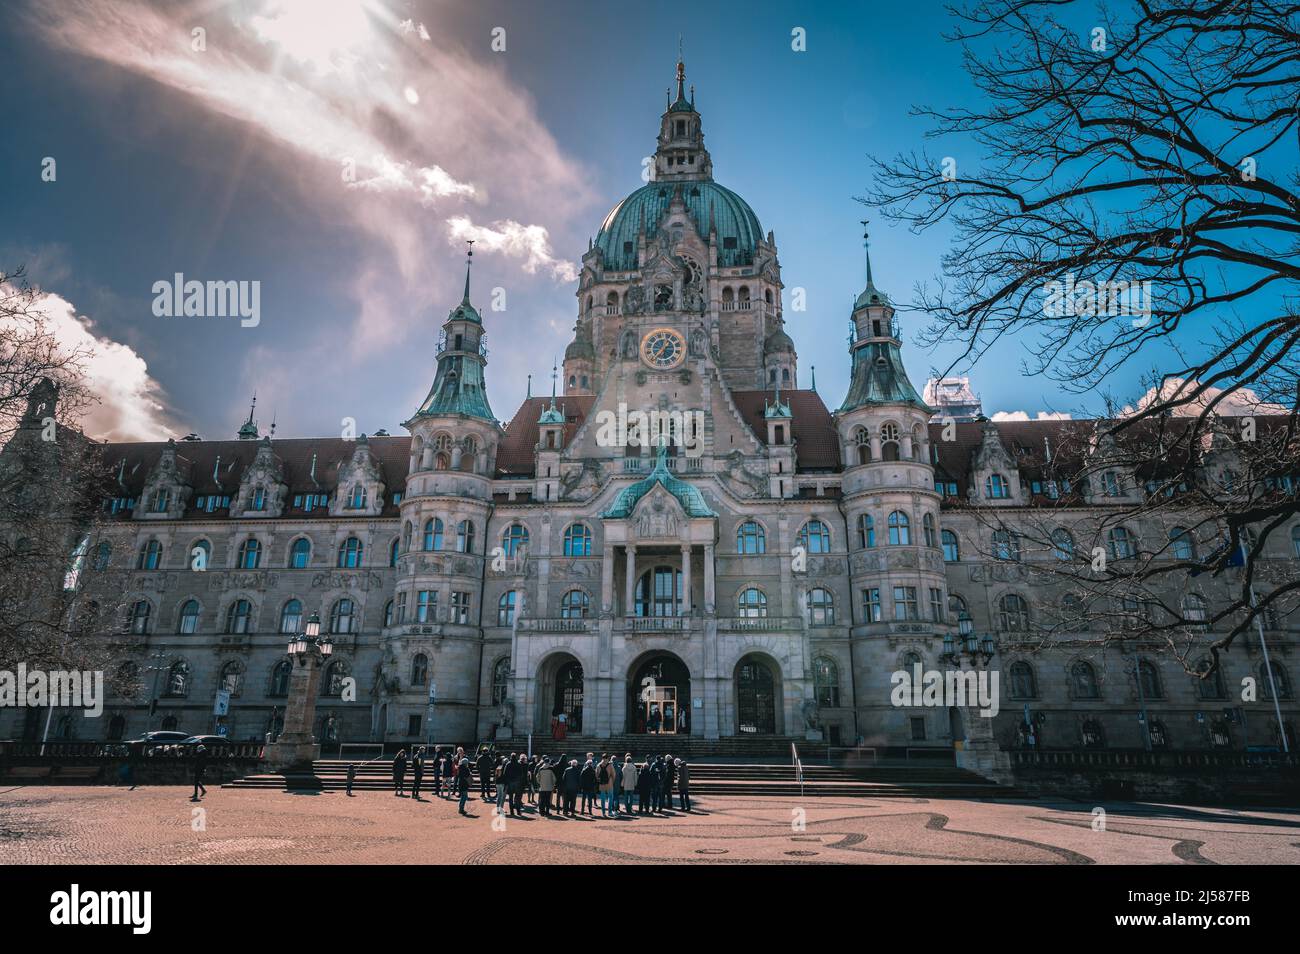 Das neue Rathaus von Hannover bei Sonnenschein und blauen Himmel, Hannover, Niedersachsen Deutschland Stock Photo